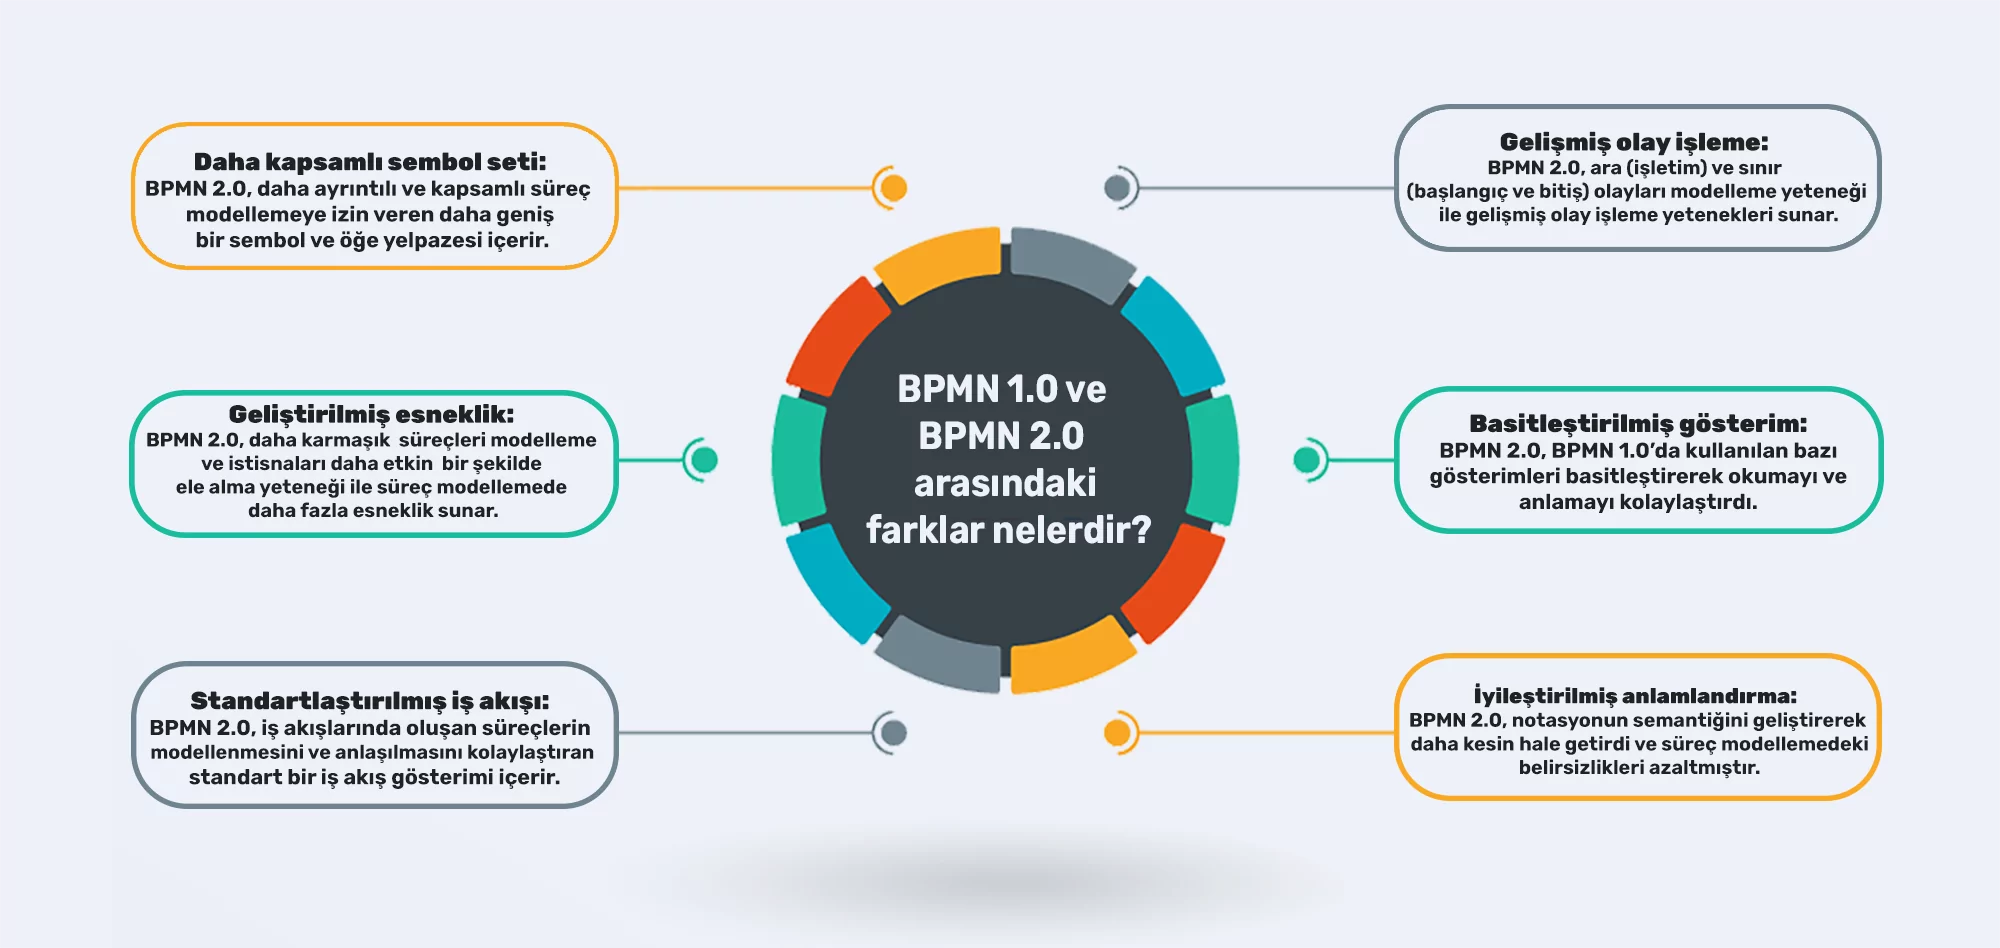 BPMN 1.0 ve BPMN 2.0 arasındaki farklar nelerdir?